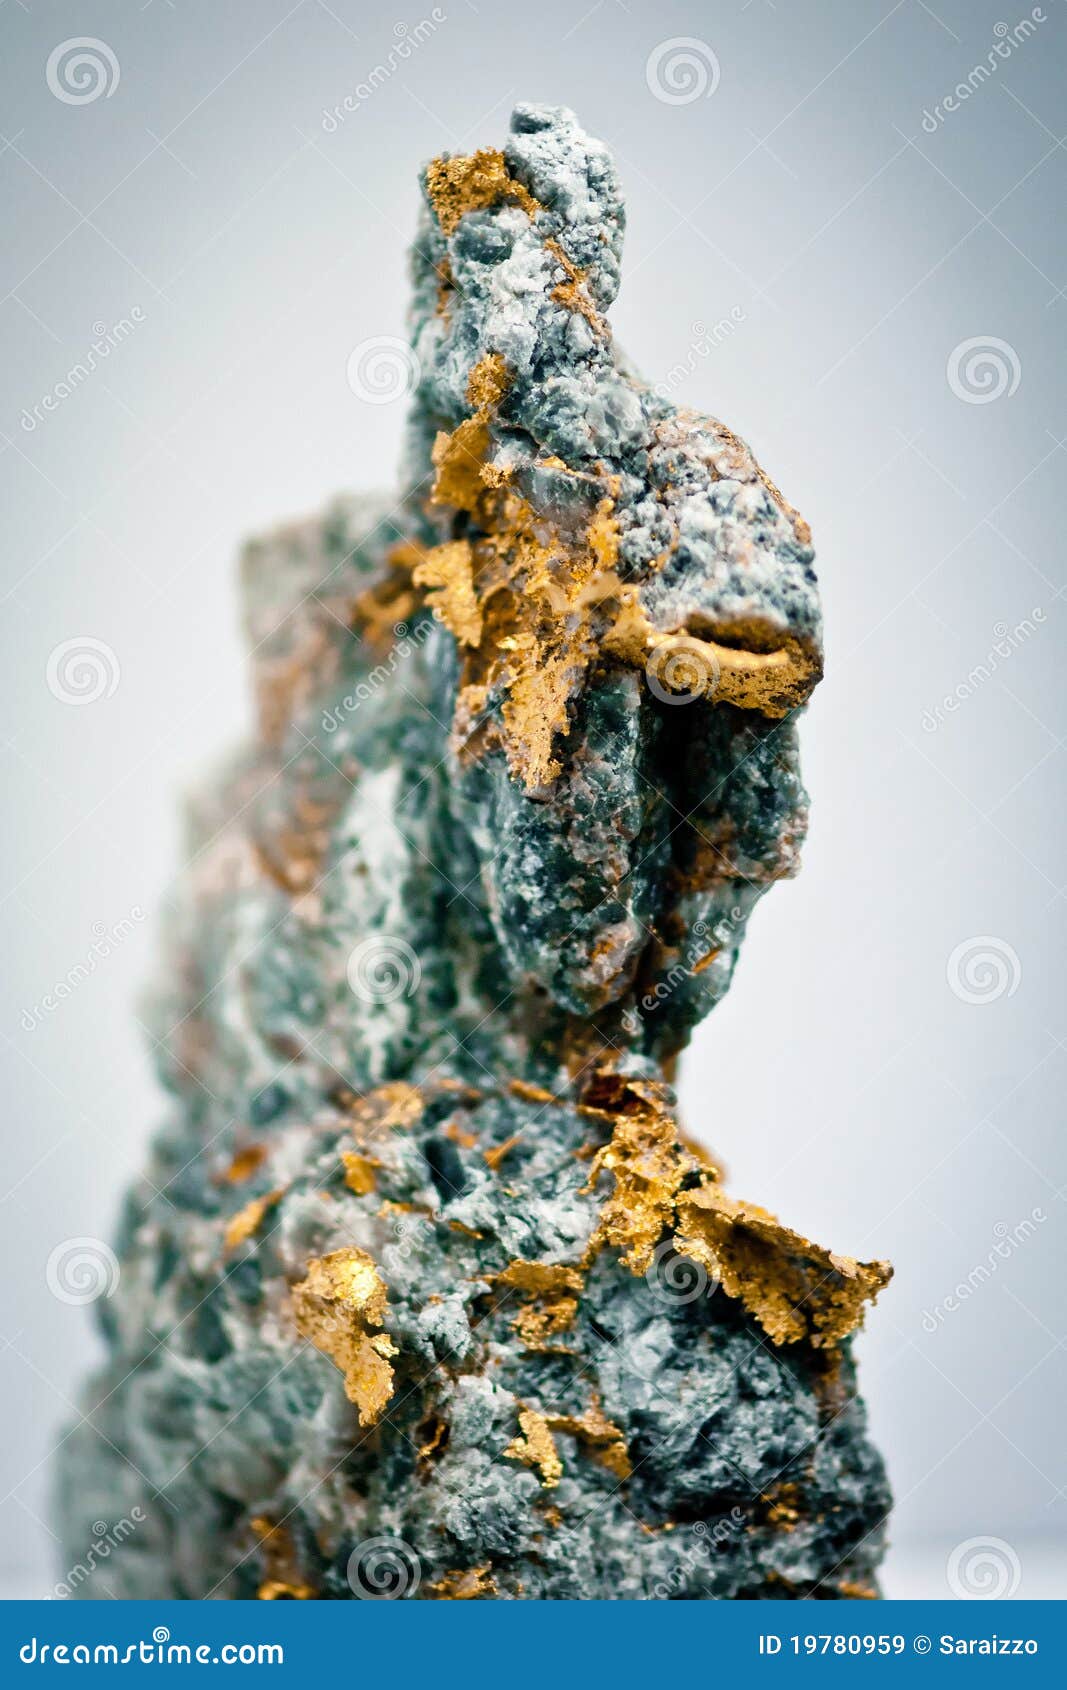 шелушится золото много минерал